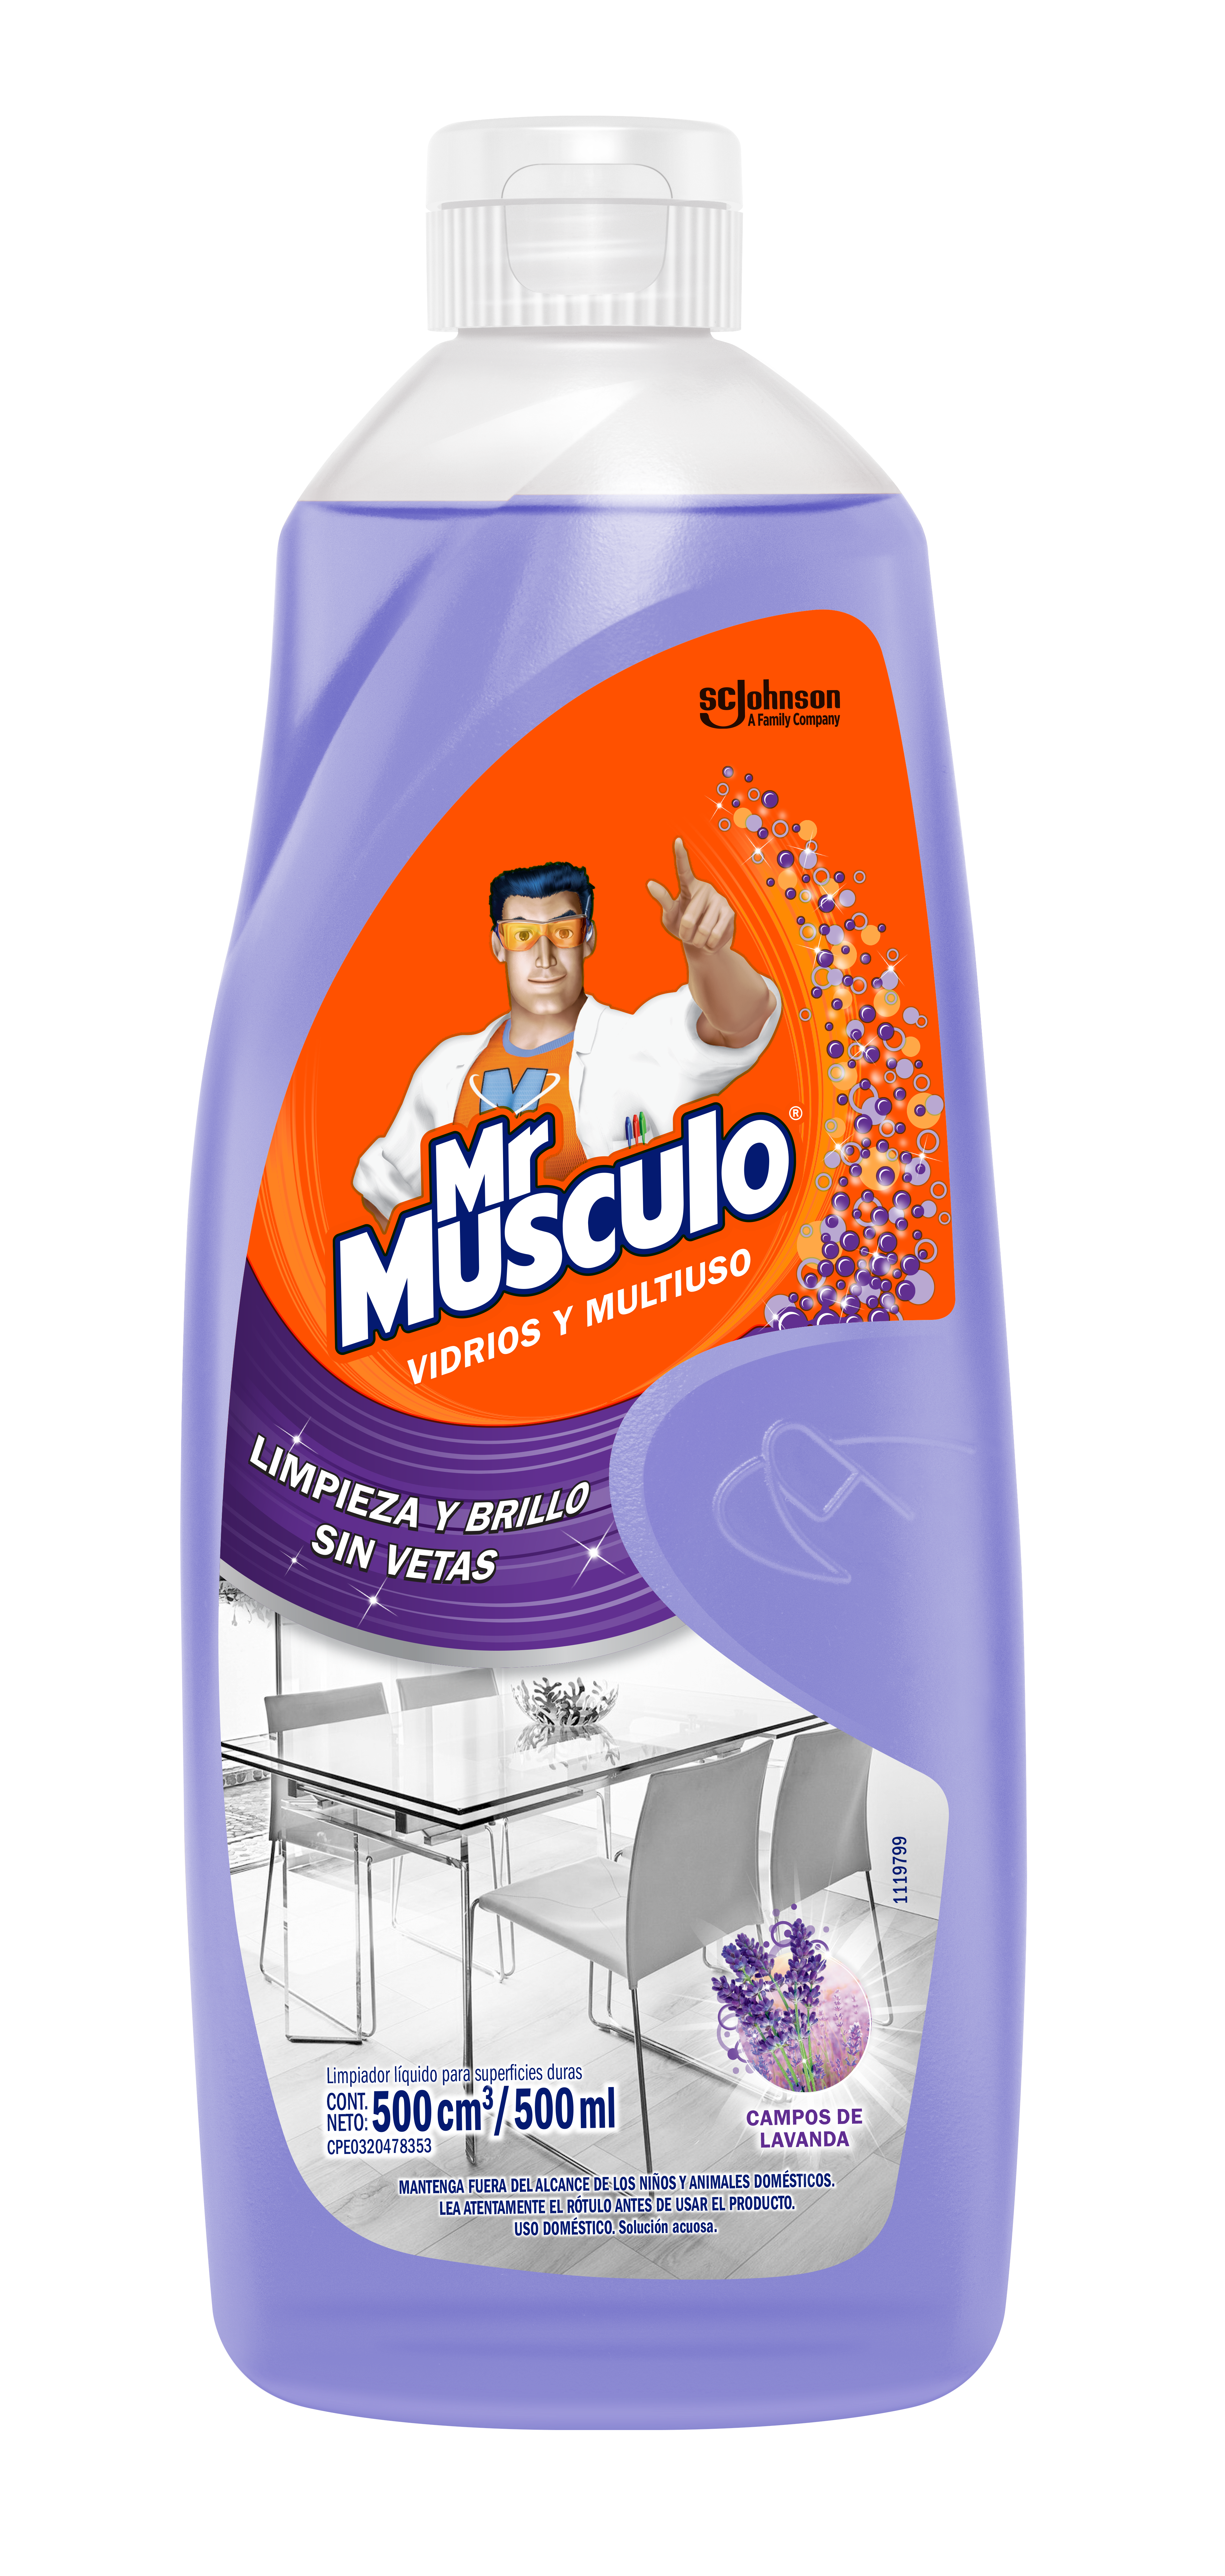 Mr Músculo® Vidrios y Multiuso Campos de Lavanda